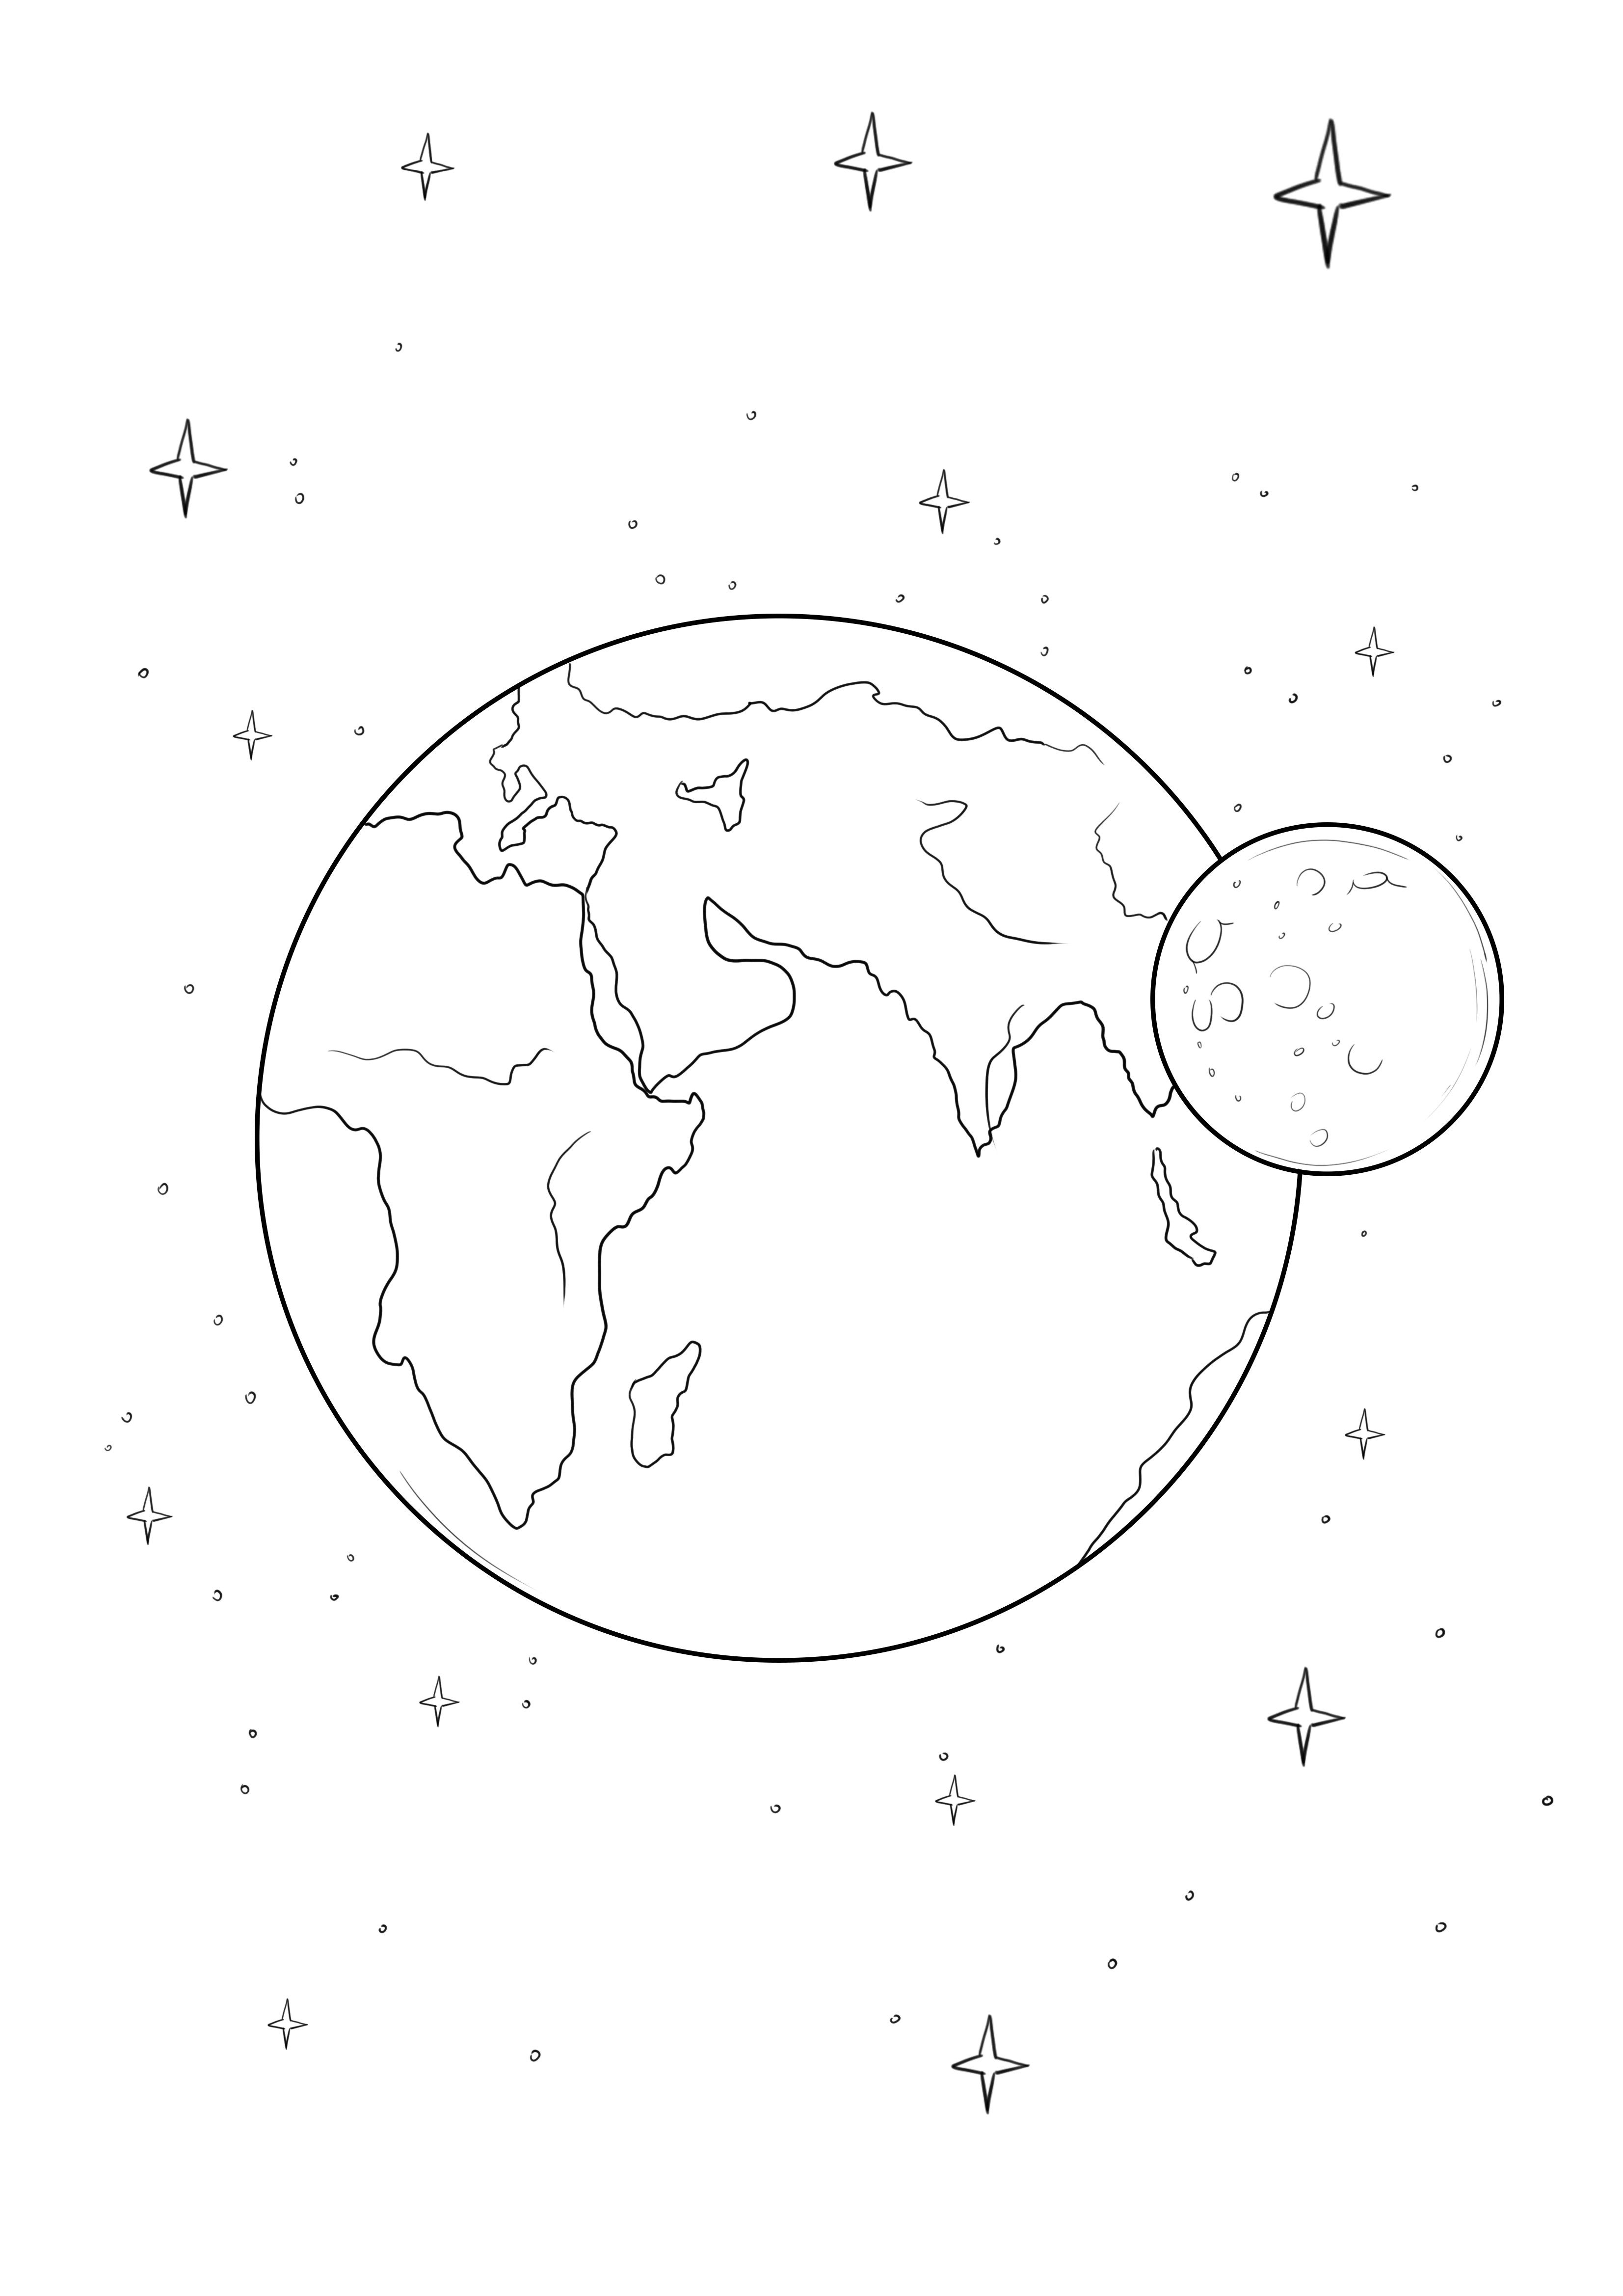 Imagem imprimível gratuita da Terra e da Lua para fácil coloração